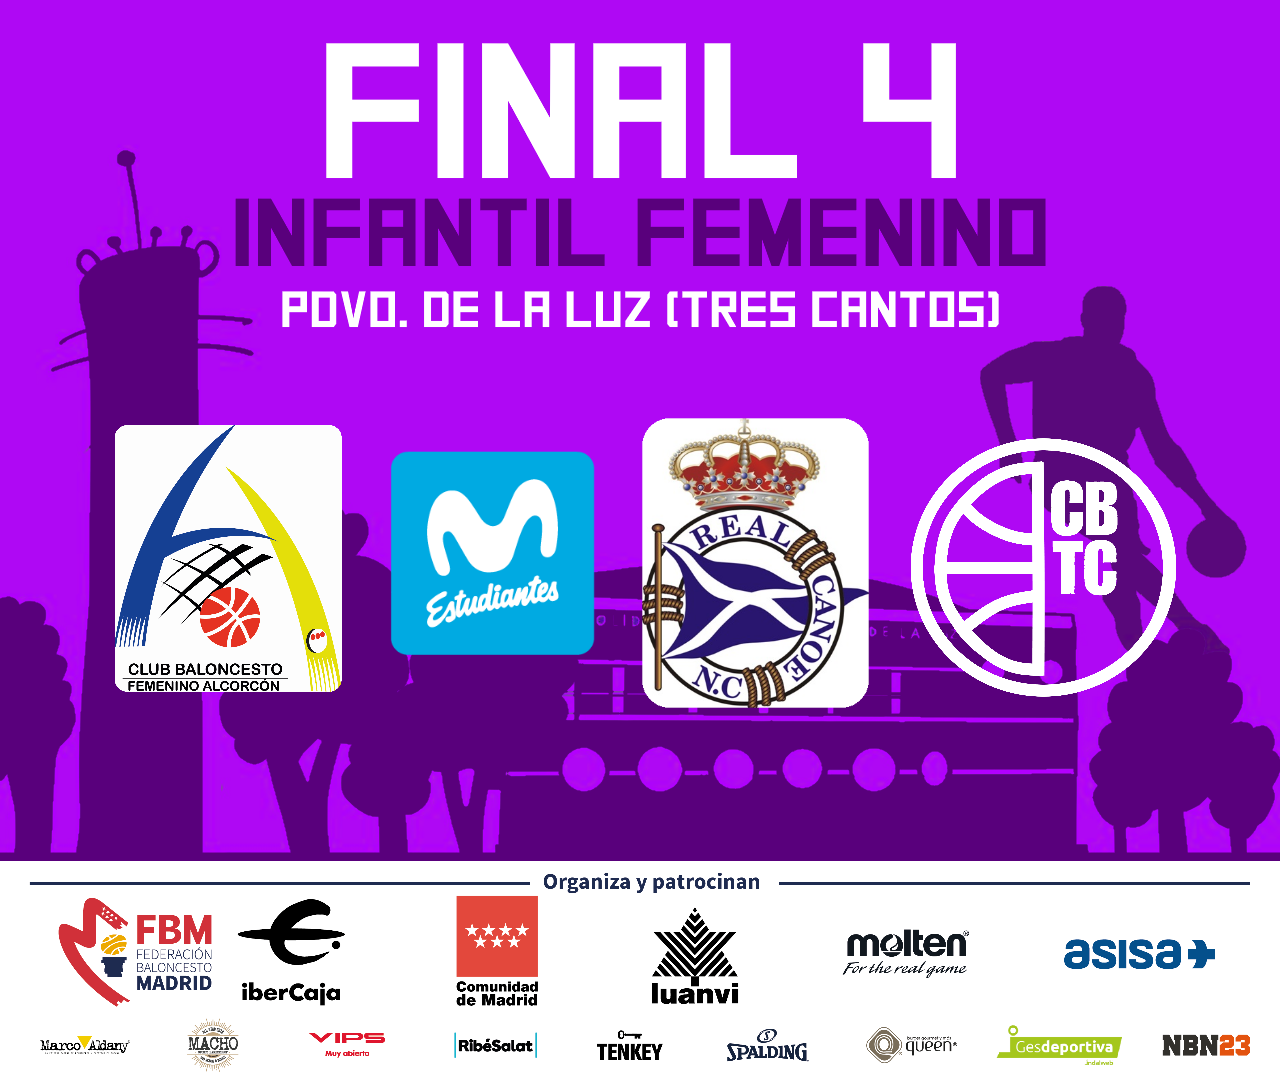 Fase Final de Madrid Infantil Femenina